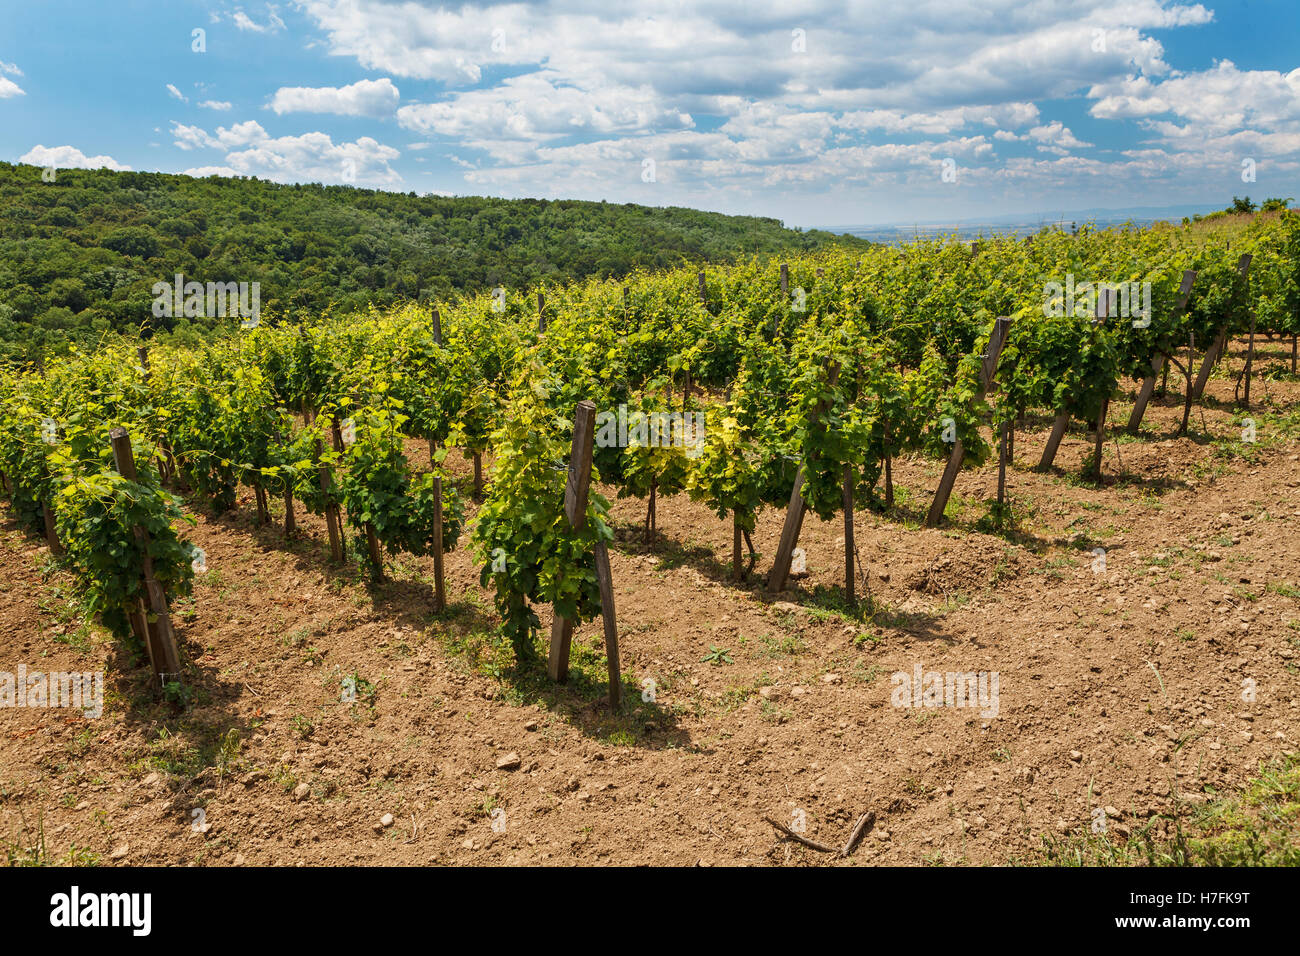 Vigne - viticulture vert bleu sous ciel nuageux, Tokaj, Hongrie, Europe Banque D'Images